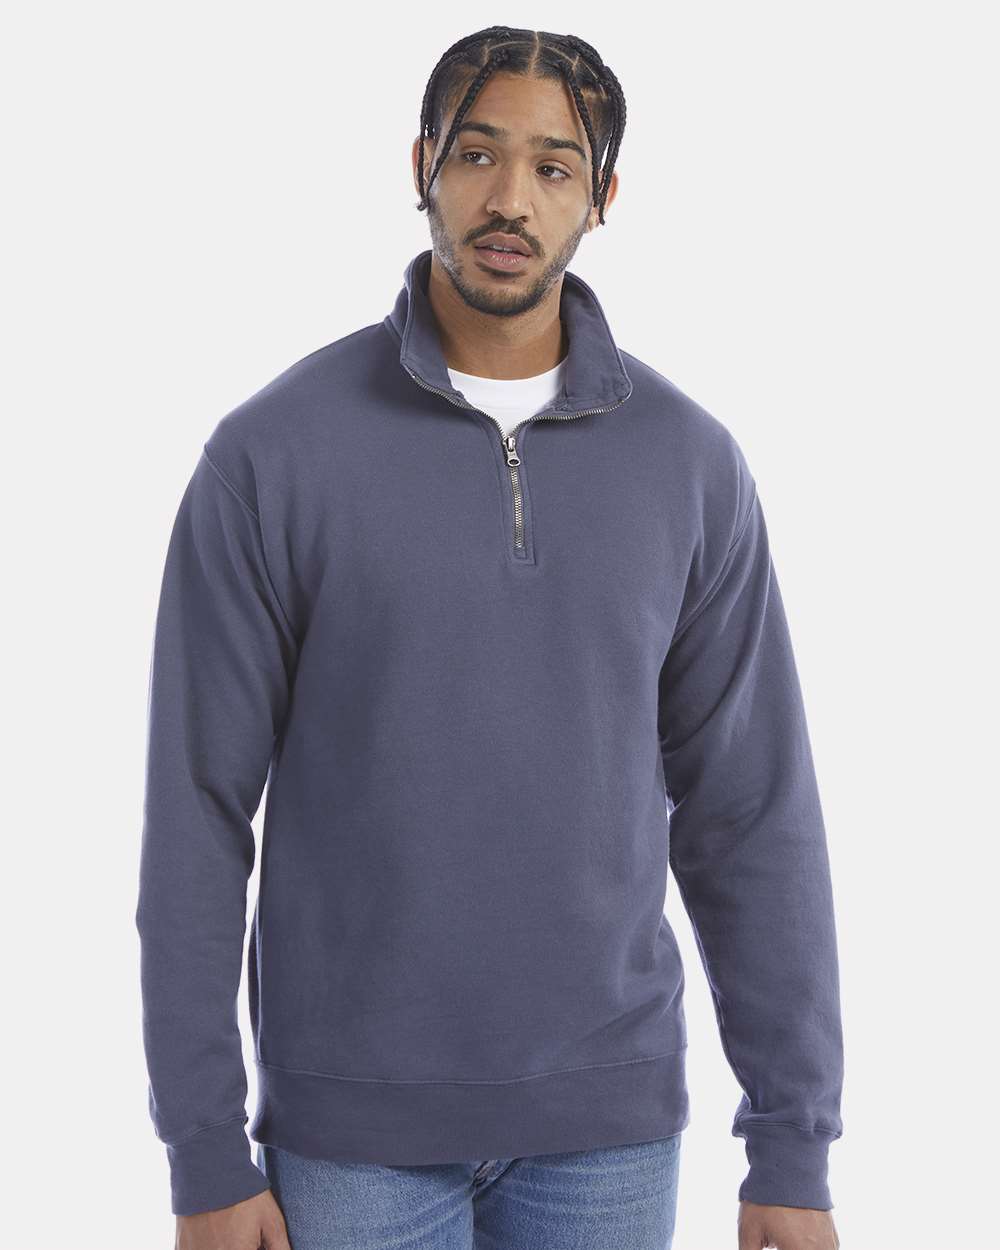 Hanes Unisex Garment Dyed Fleece Sweatshirt